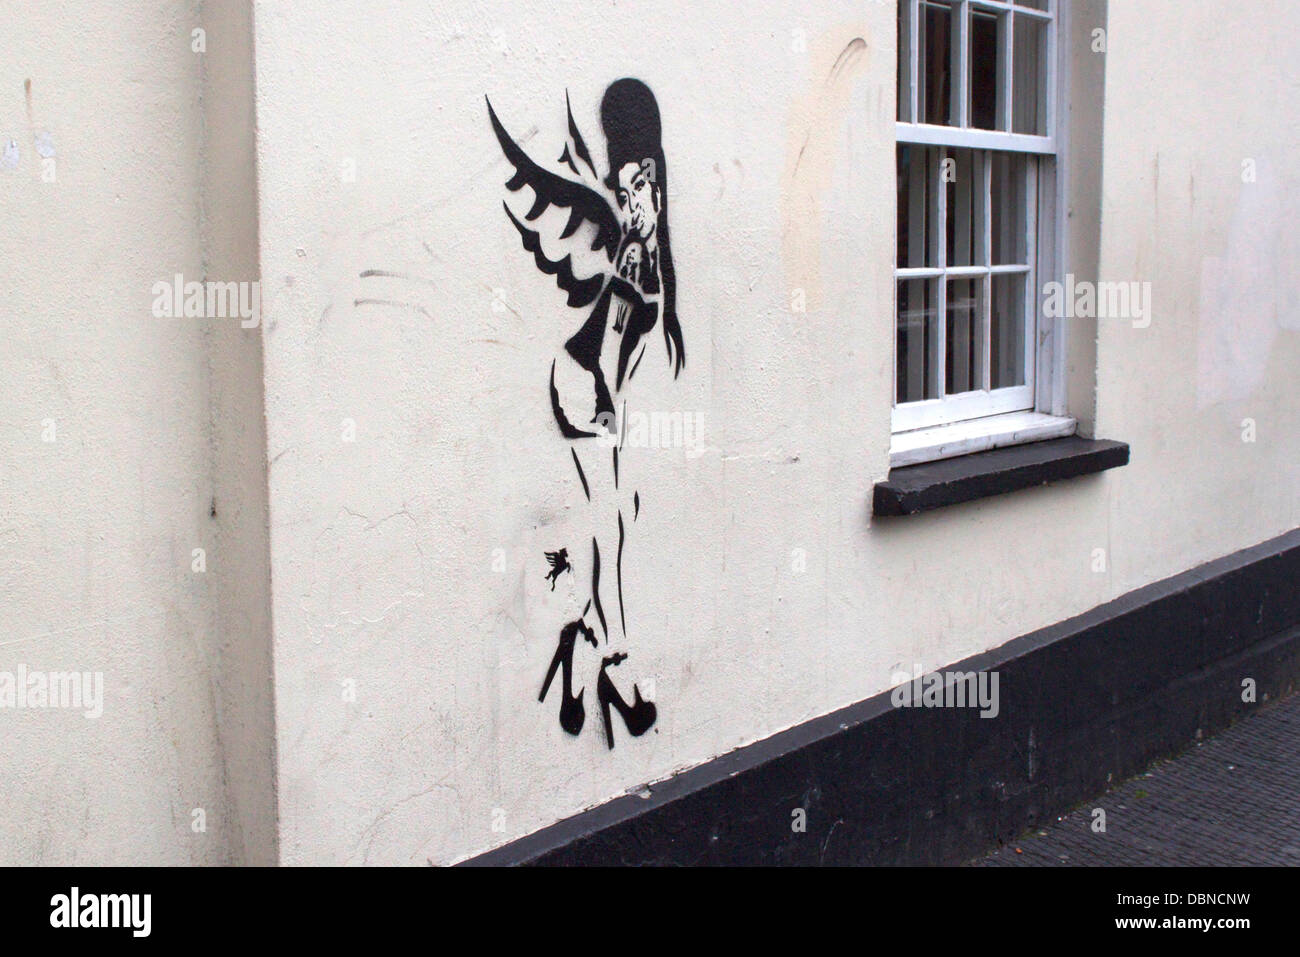 Une pièce d'art inspiré Banksy a comparu à Camden en hommage à Amy Winehouse après sa mort le samedi (23JUILLET11). L'illustration montre le retour à l'étoile noire d'ailes d'ange de roulement complet avec son bras tatouage. Winehouse a été un résident local à C Banque D'Images